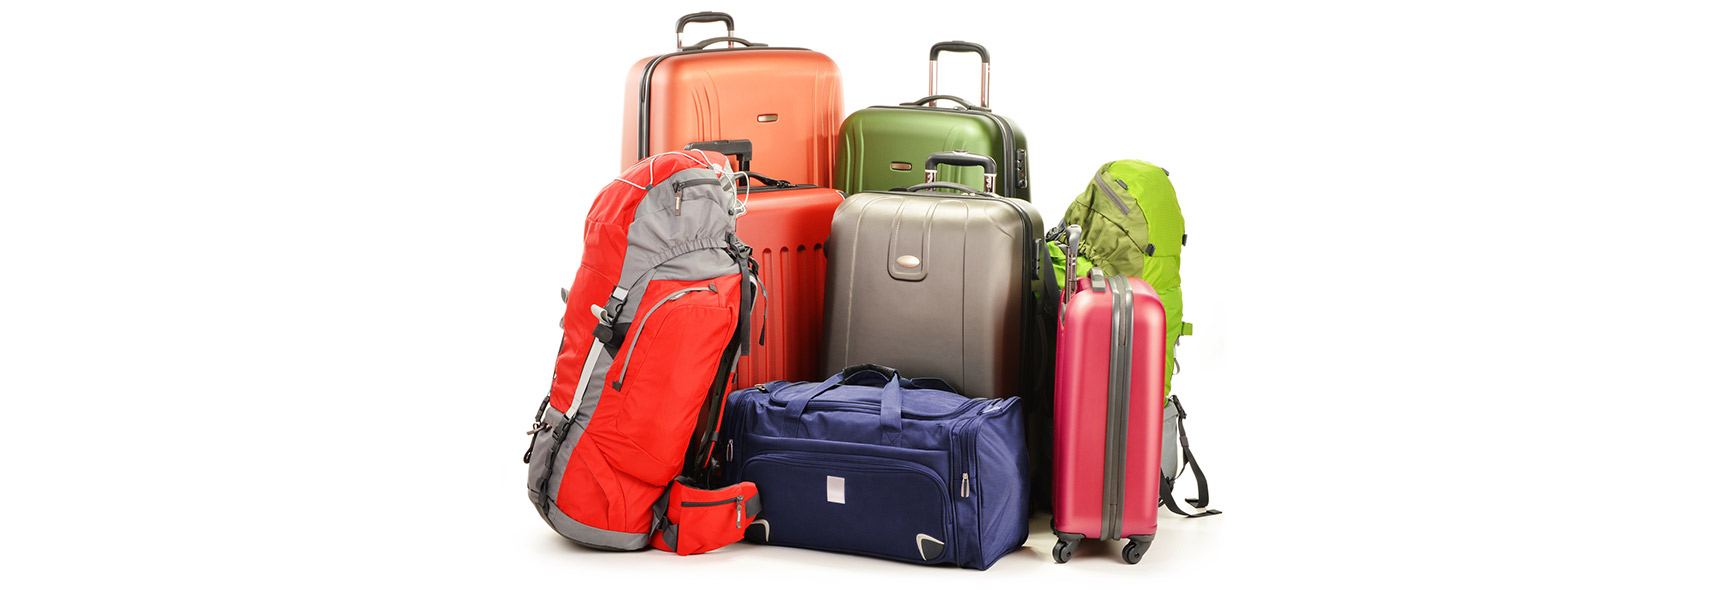 Quel bagage choisir pour un voyage au long cours ? - Ma Tribu En